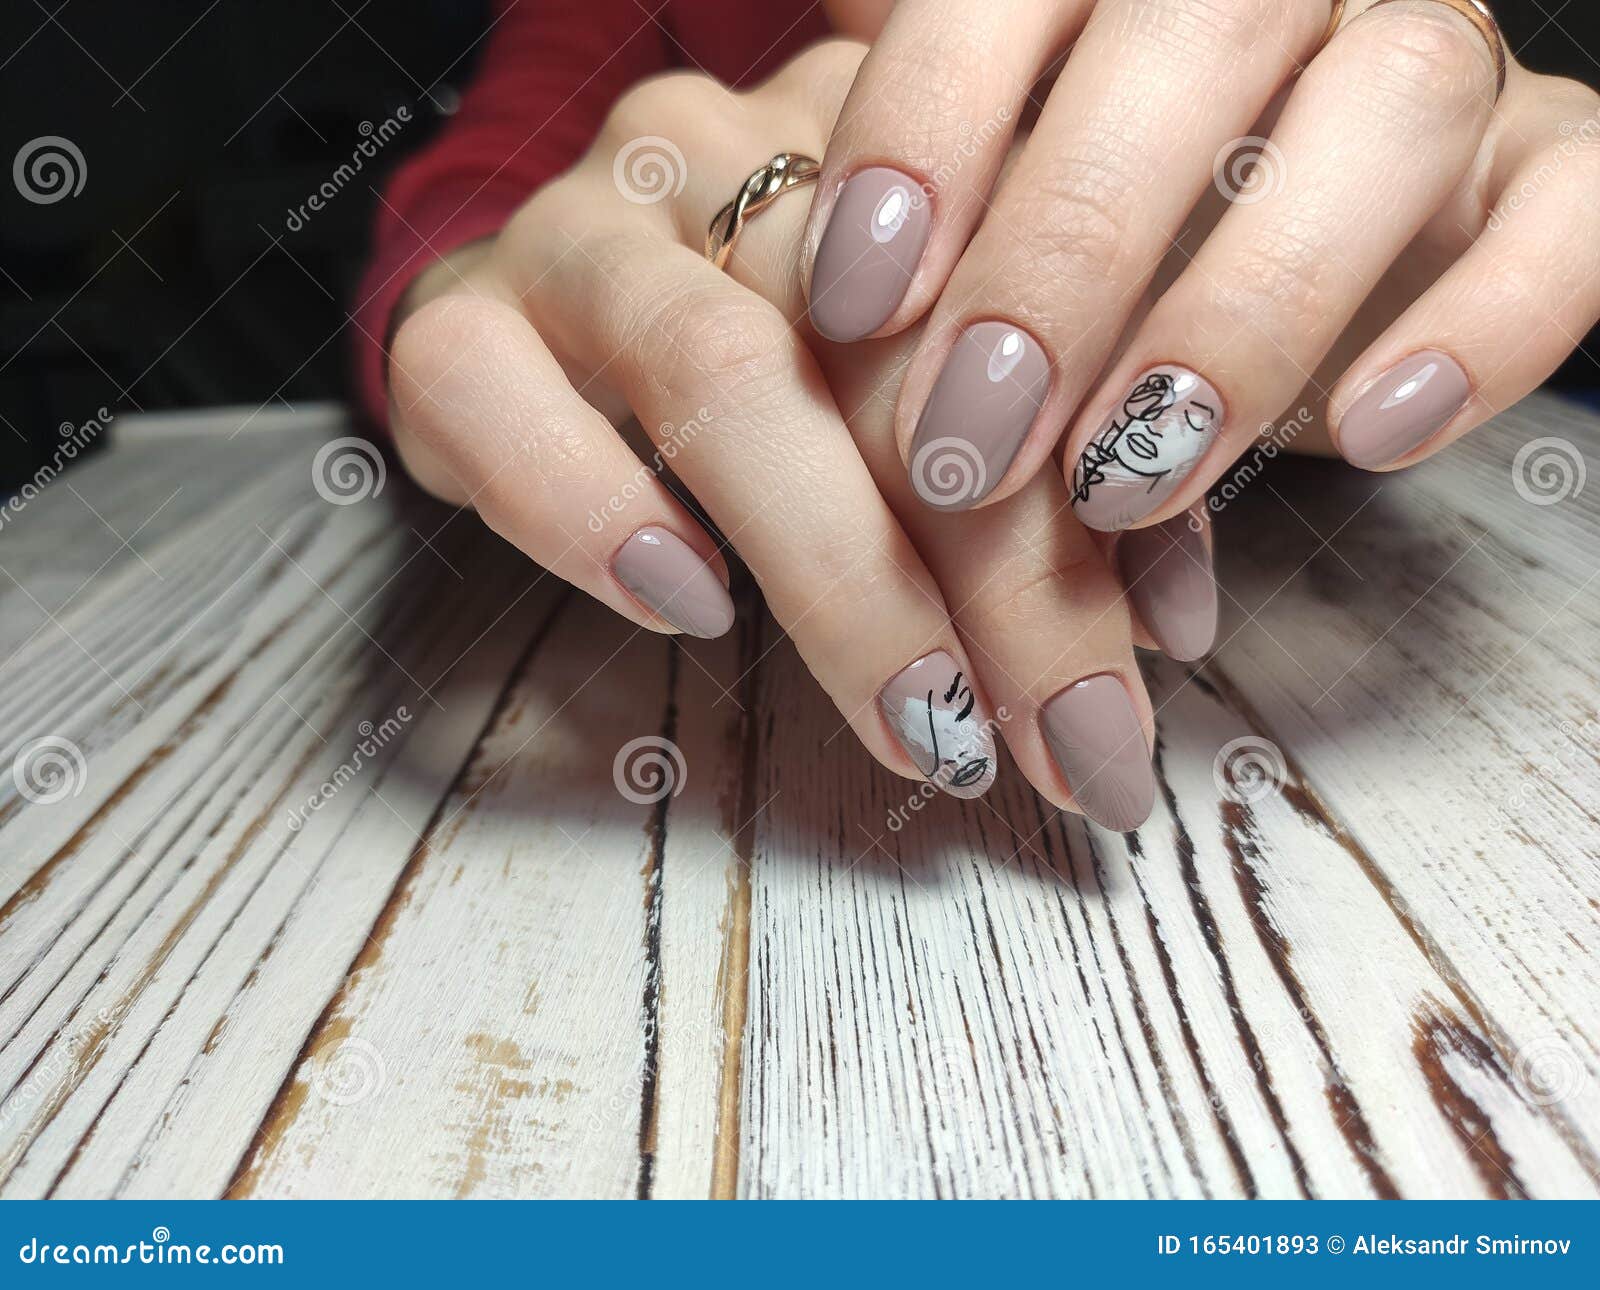 Formas de uñas según las manos cuál le va mejor a las tuyas